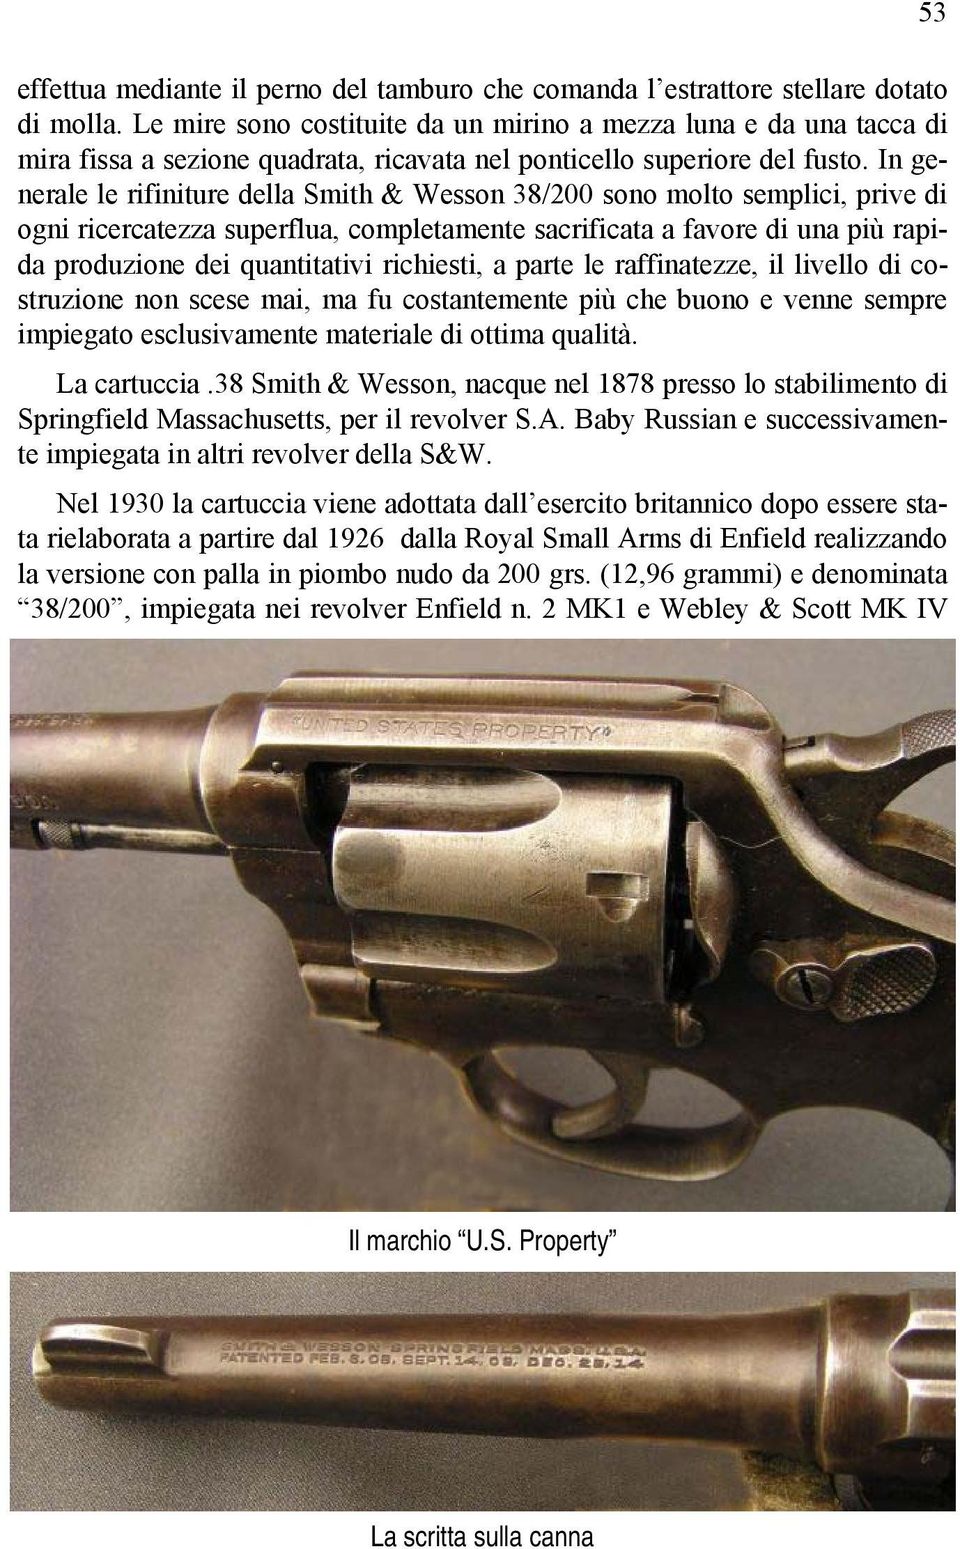 In generale le rifiniture della Smith & Wesson 38/200 sono molto semplici, prive di ogni ricercatezza superflua, completamente sacrificata a favore di una più rapida produzione dei quantitativi